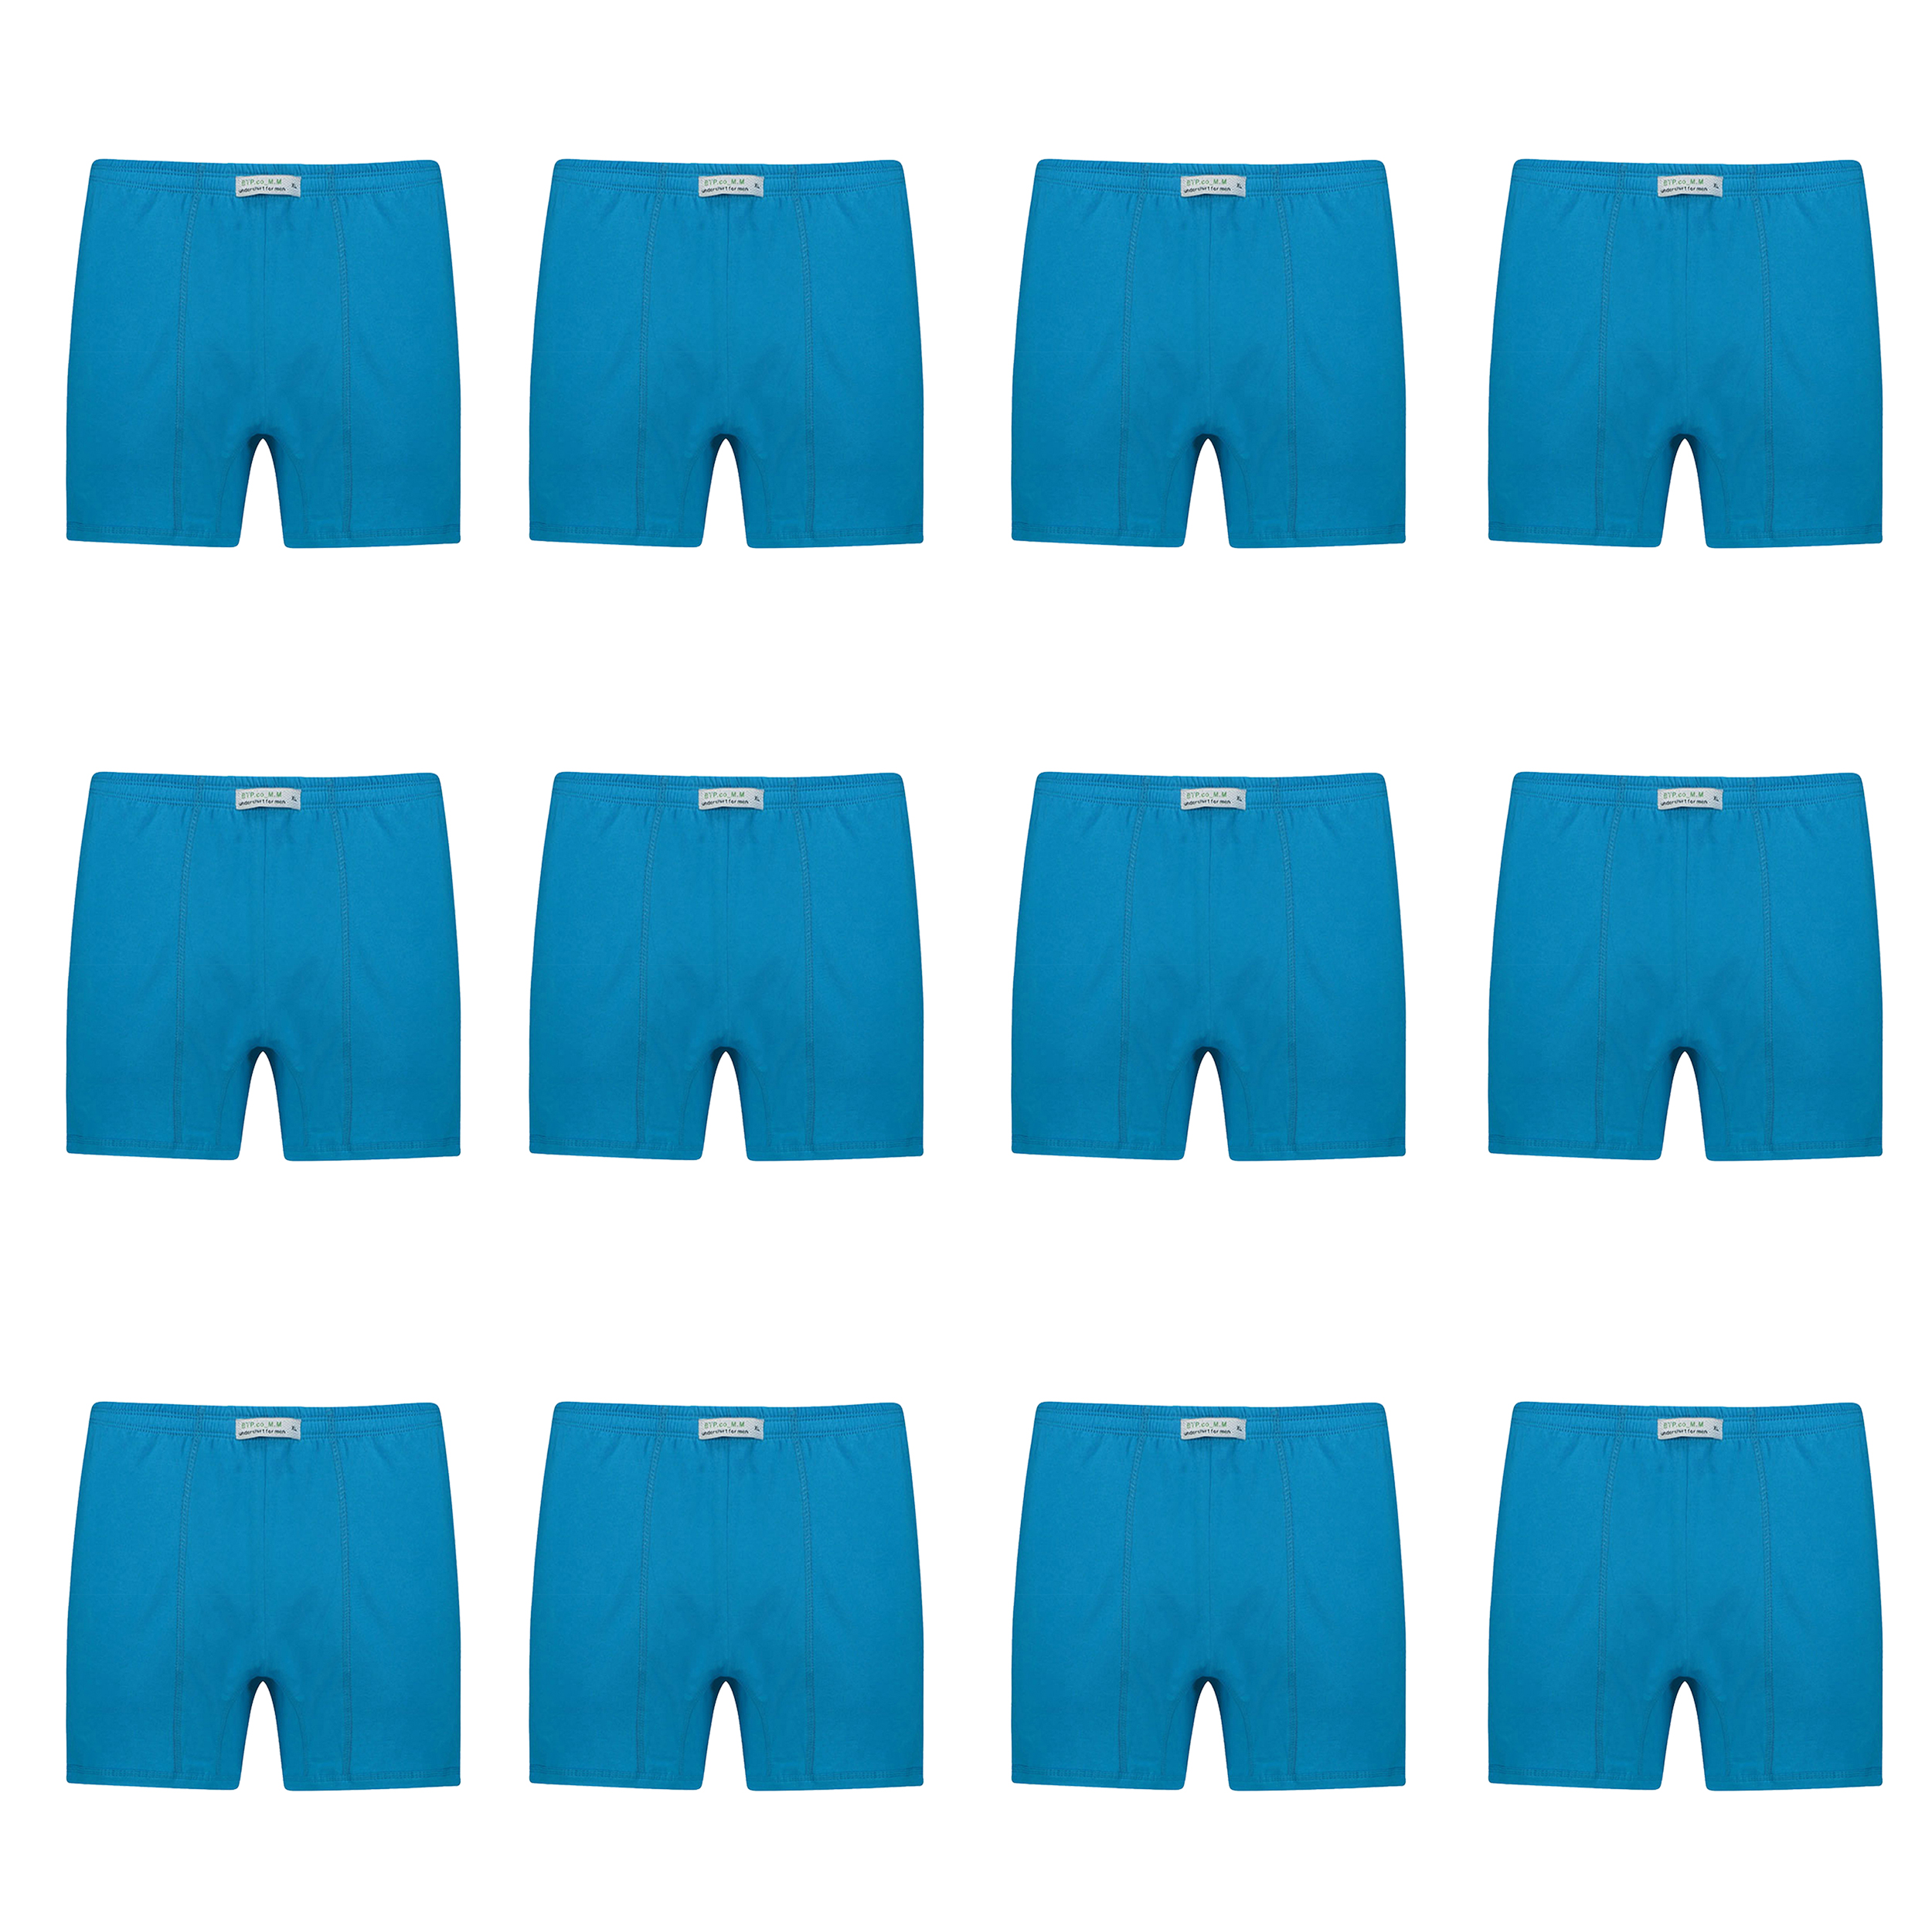 شورت پسرانه برهان تن پوش مدل پادار 3-04  رنگ آبی بسته 12 عددی